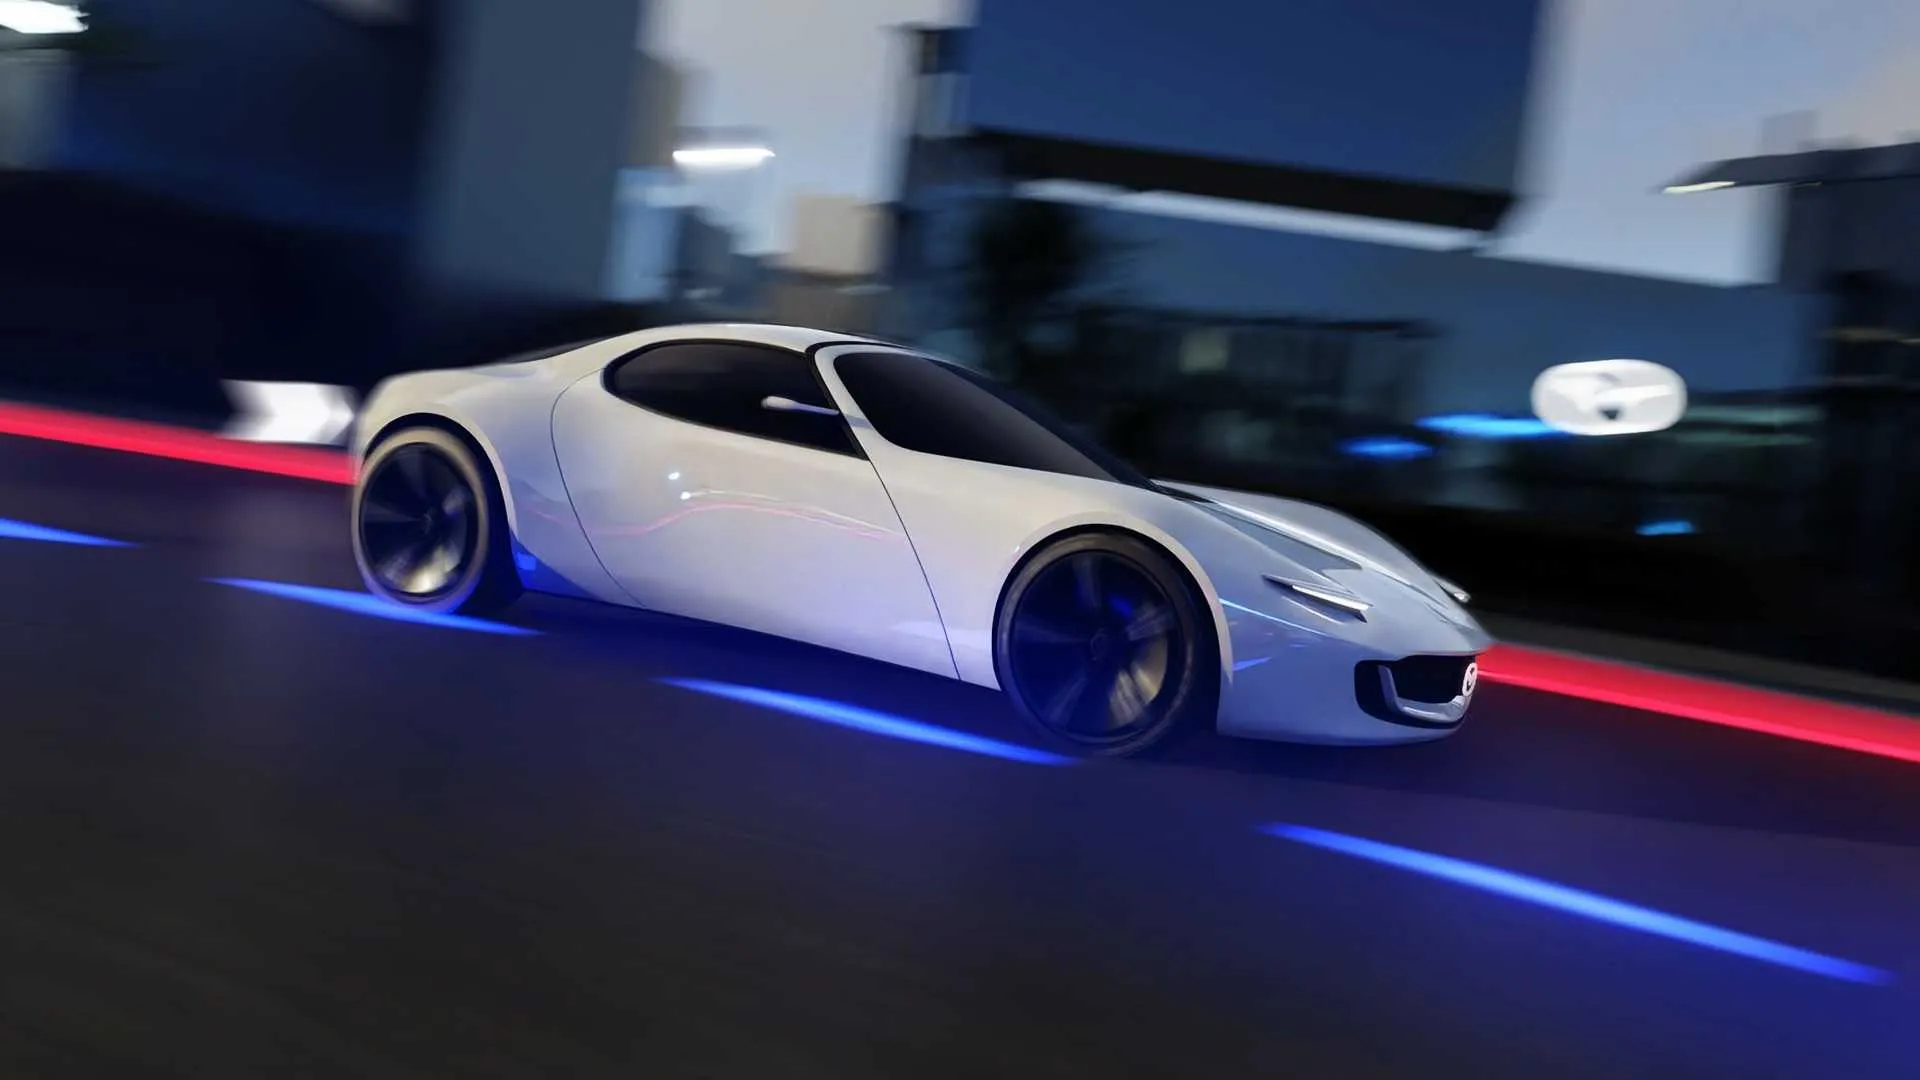 El Mazda Vision Study Concept es, para muchos, un adelanto del próximo MX-5